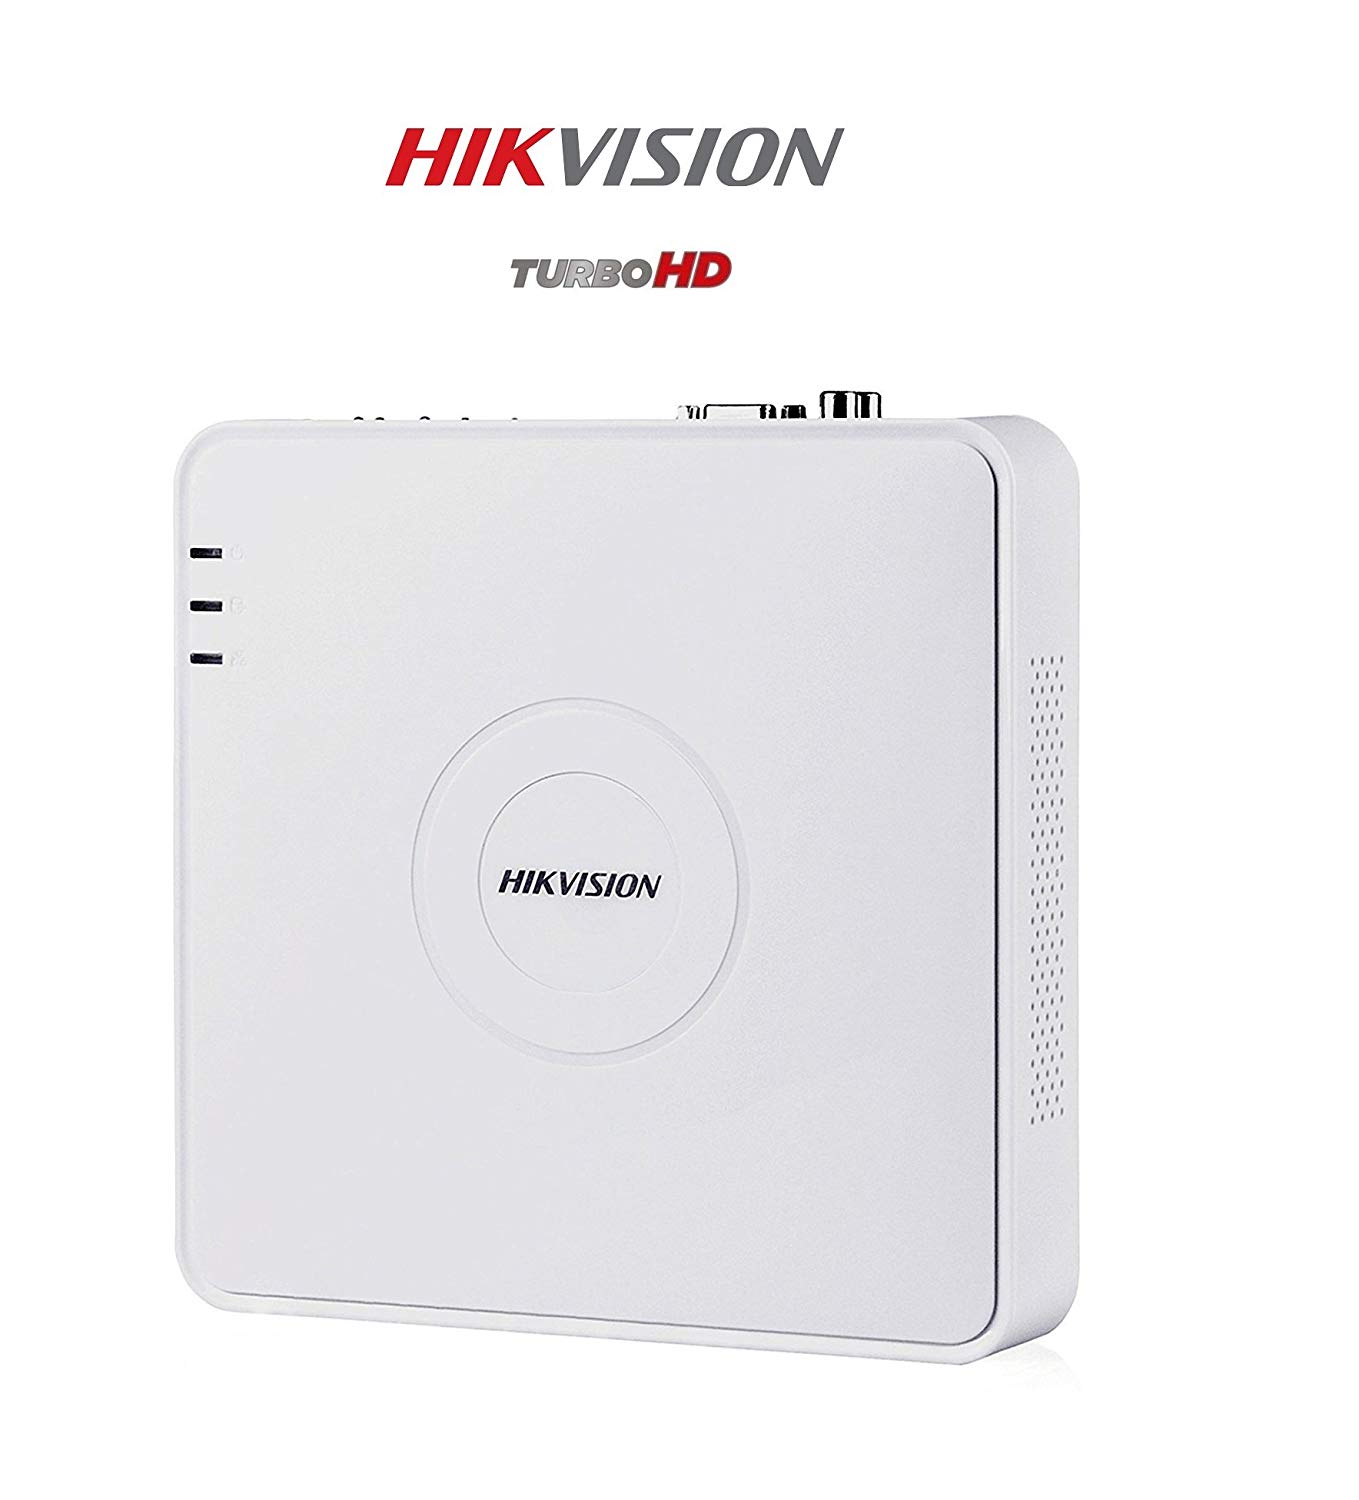 HIKVISION DVR DS-7A04HQHI-K1 4 Channel DVR HDTVI 1080P 1 AUDIO , 1 SATA 1080P SUPPORT FOR 2 Mega Pixel